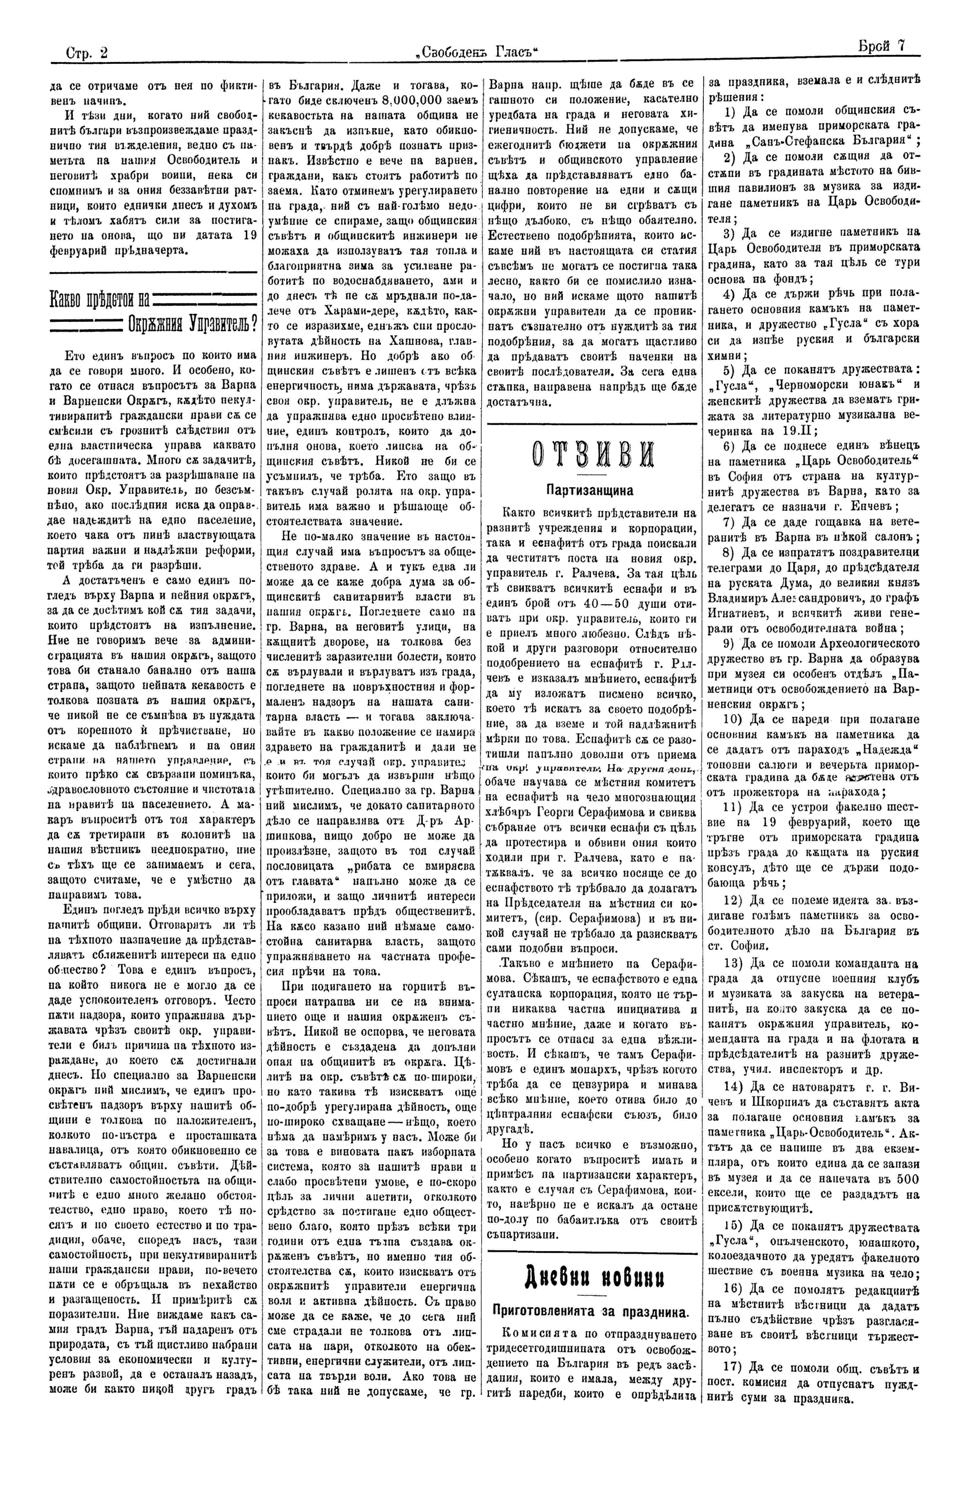 Приготовленията за праздника.(Дневни новини). // Свободен глас (Варна), IV,  No 7, 17/02/1908, с. 2.